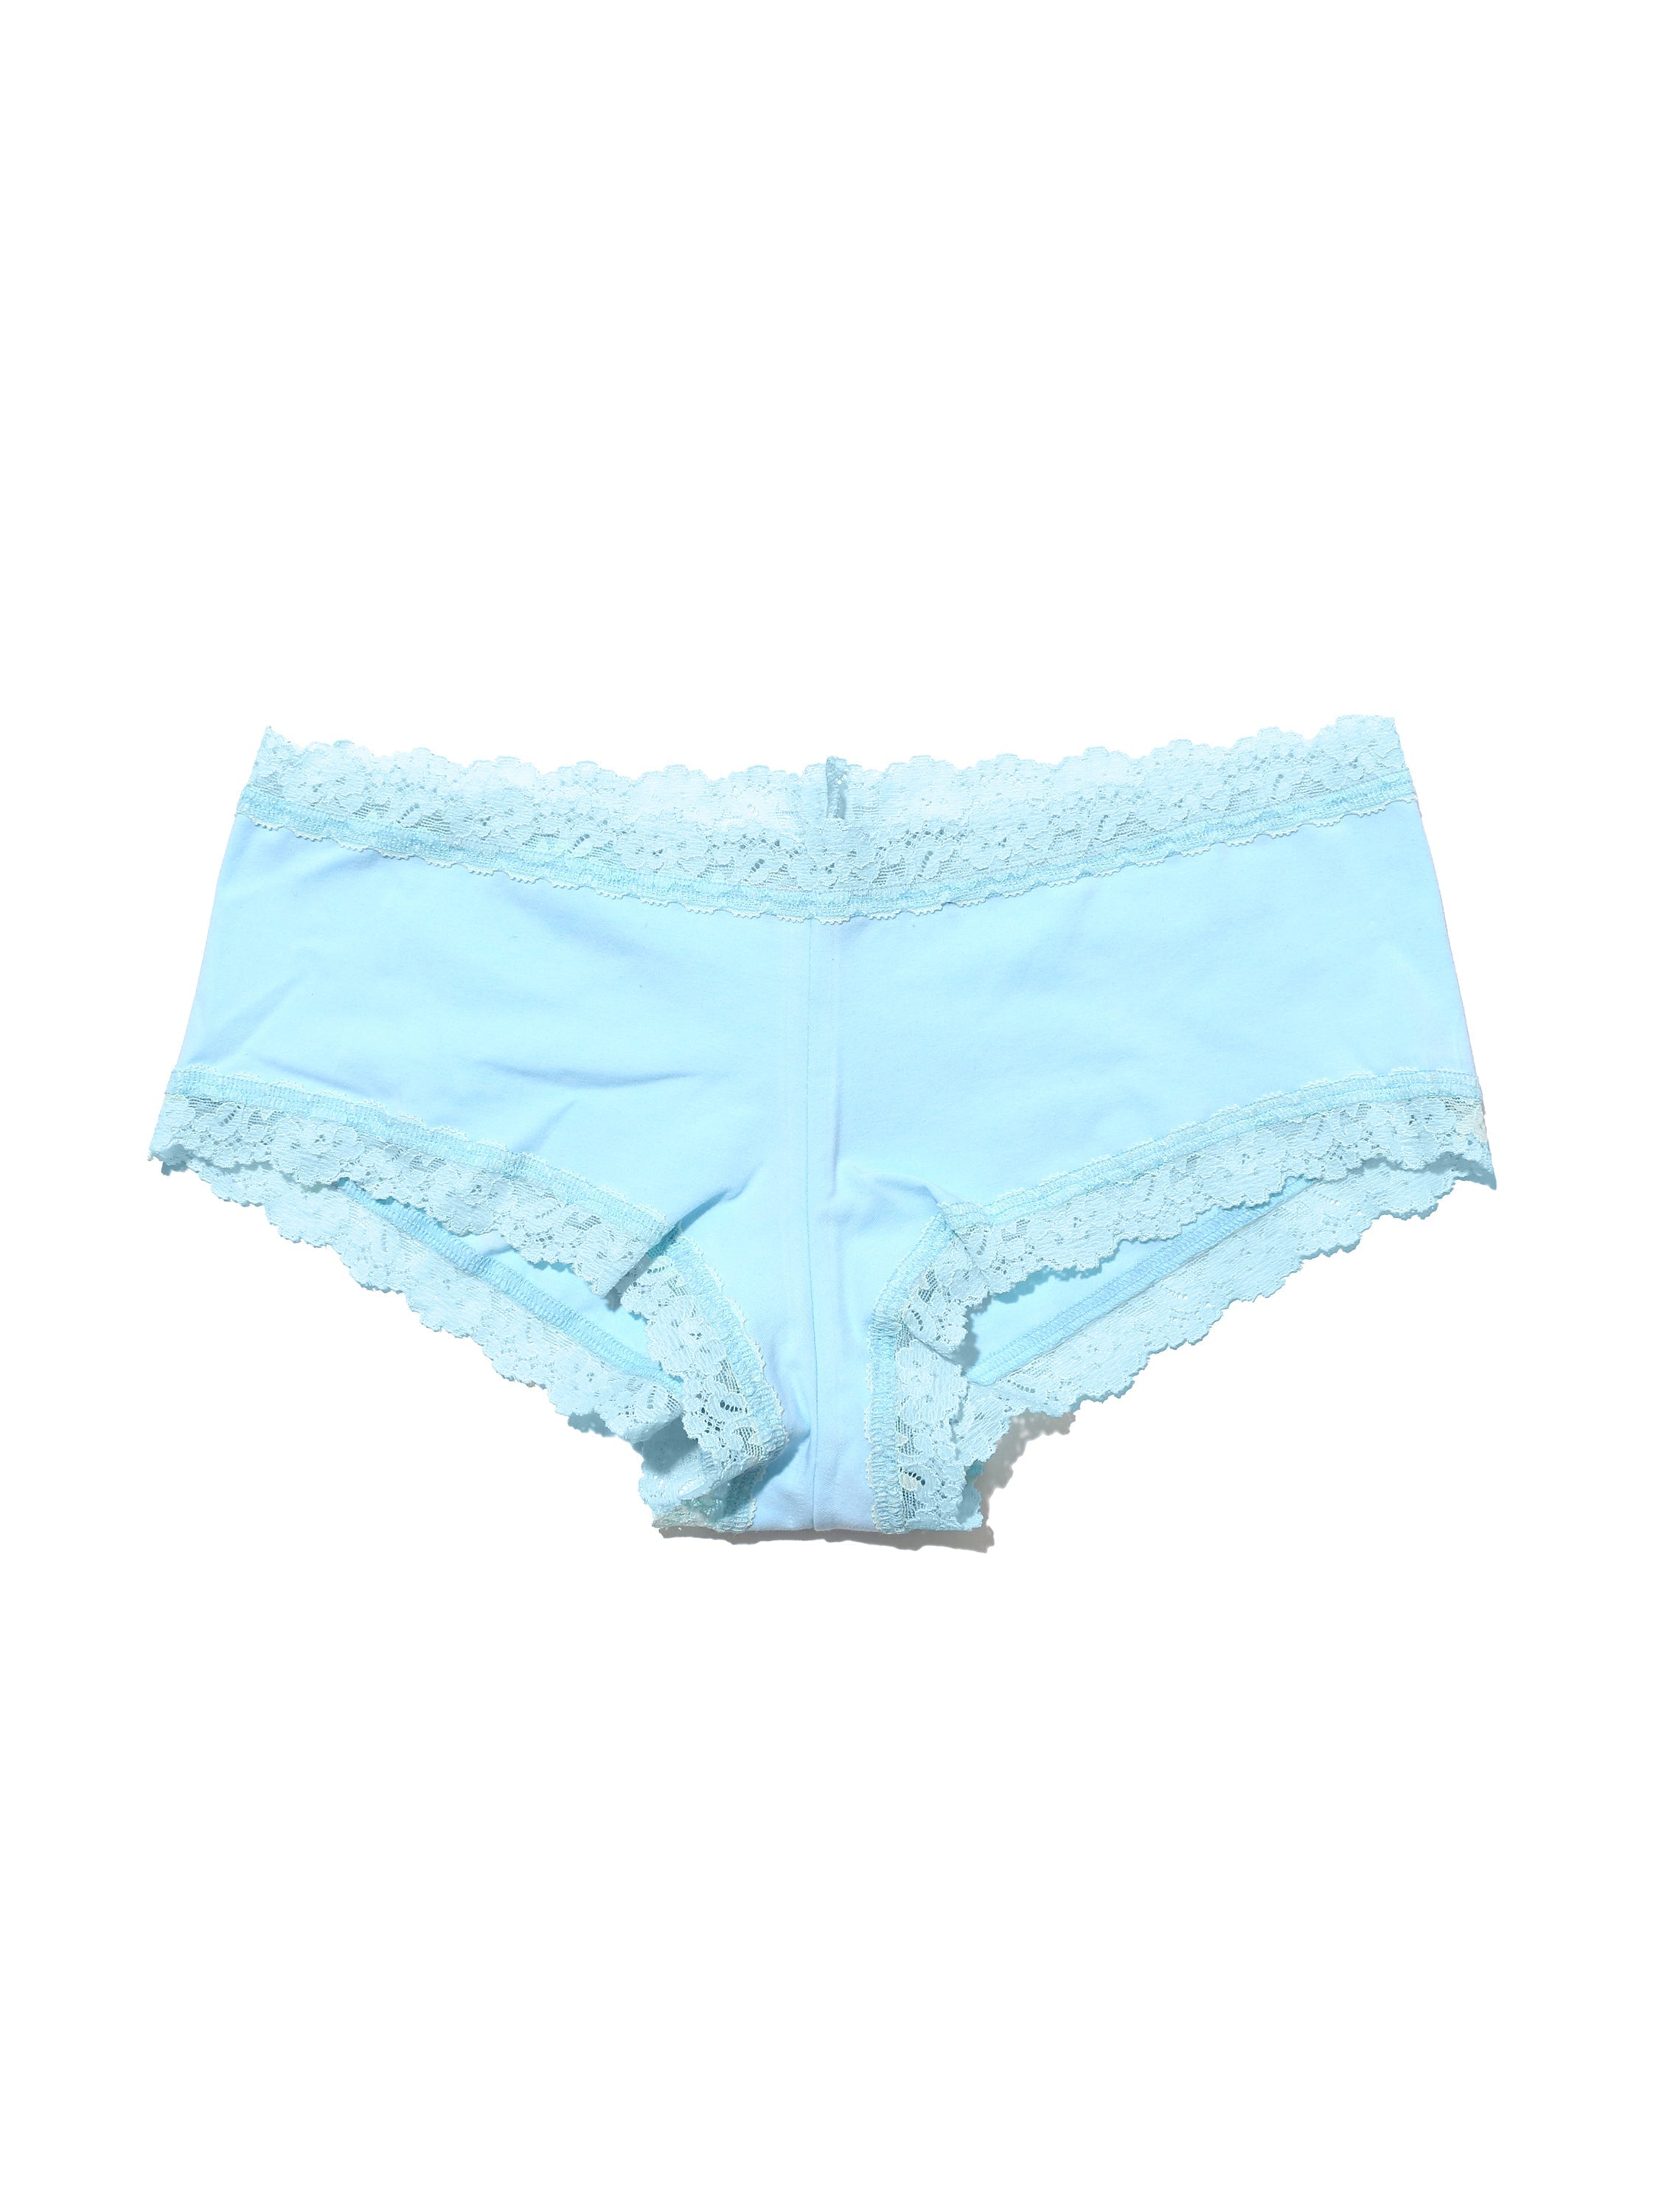 light blue cotton boy shorts panty